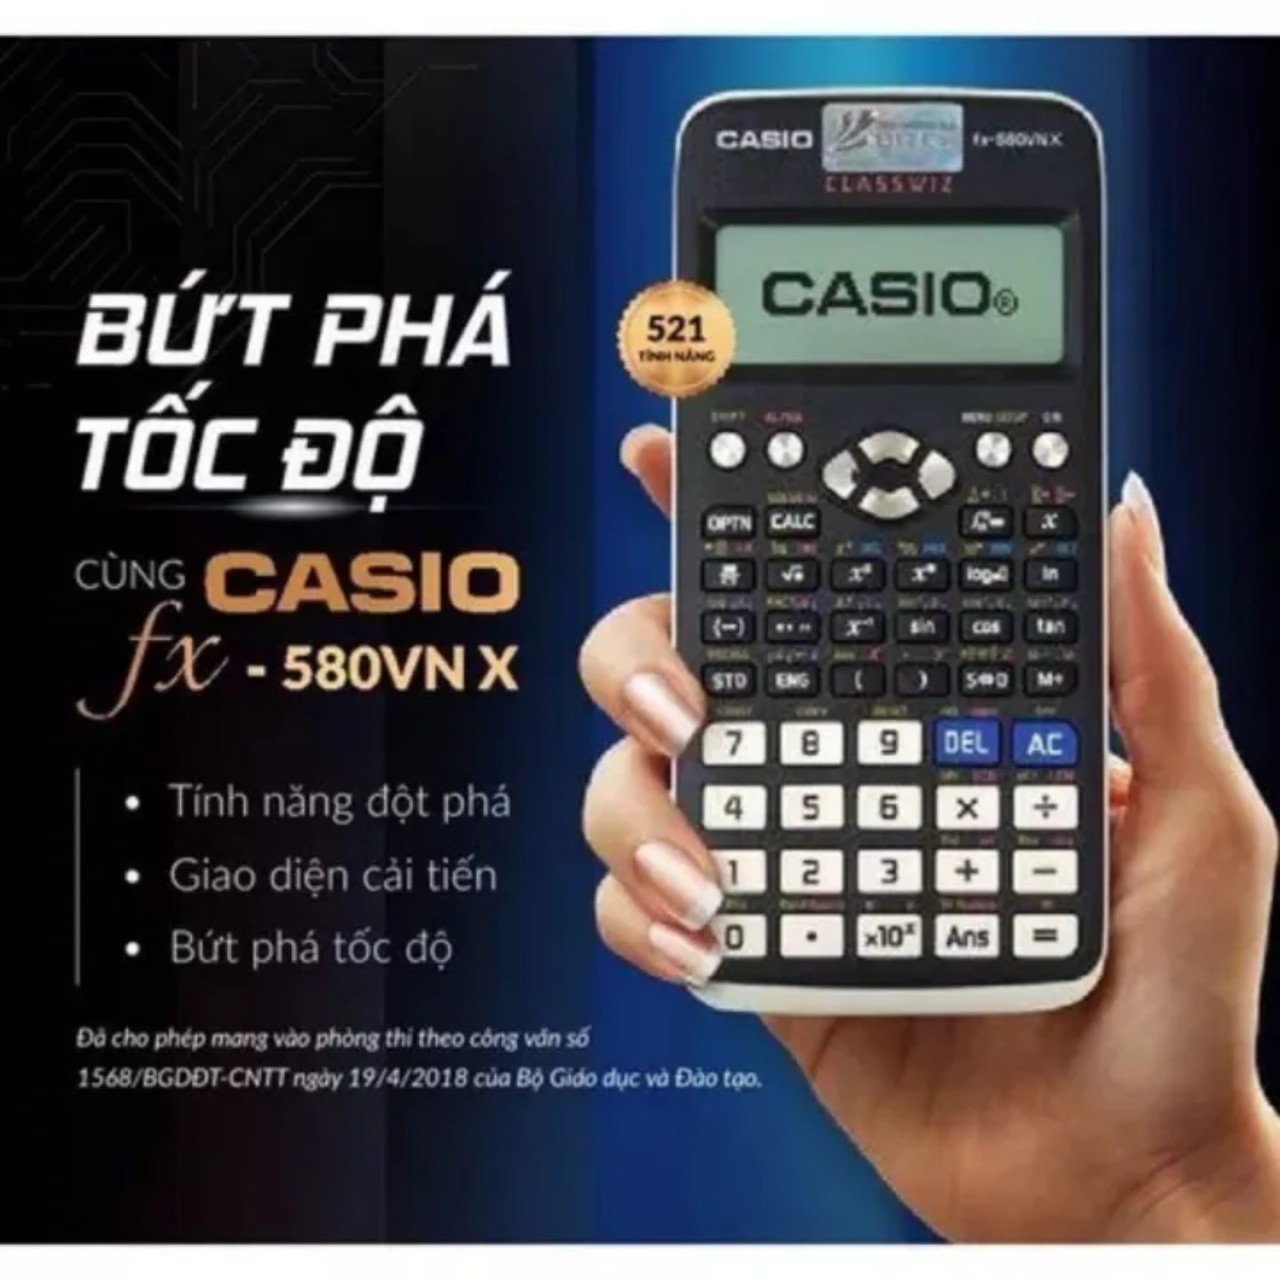 Máy tính Casio là một công cụ đắc lực trong việc học toán học và khoa học. Hãy khám phá những tính năng đầy bất ngờ của máy tính Casio và tận hưởng trải nghiệm toán học thú vị hơn với chúng!